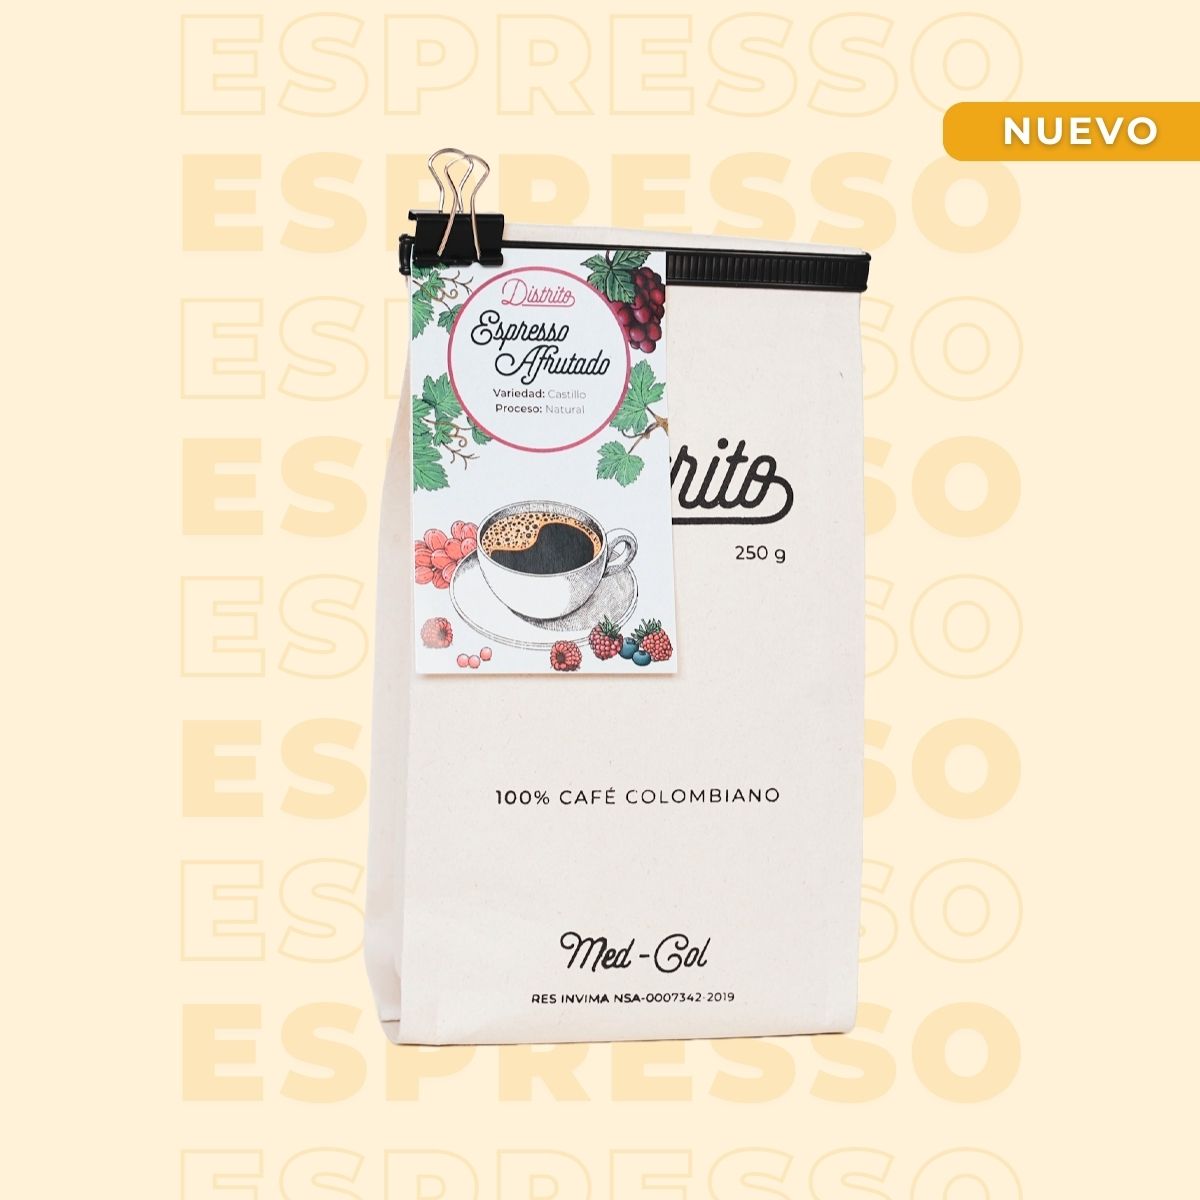 Espresso afrutado - Café Colombiano - Café de Especialidad